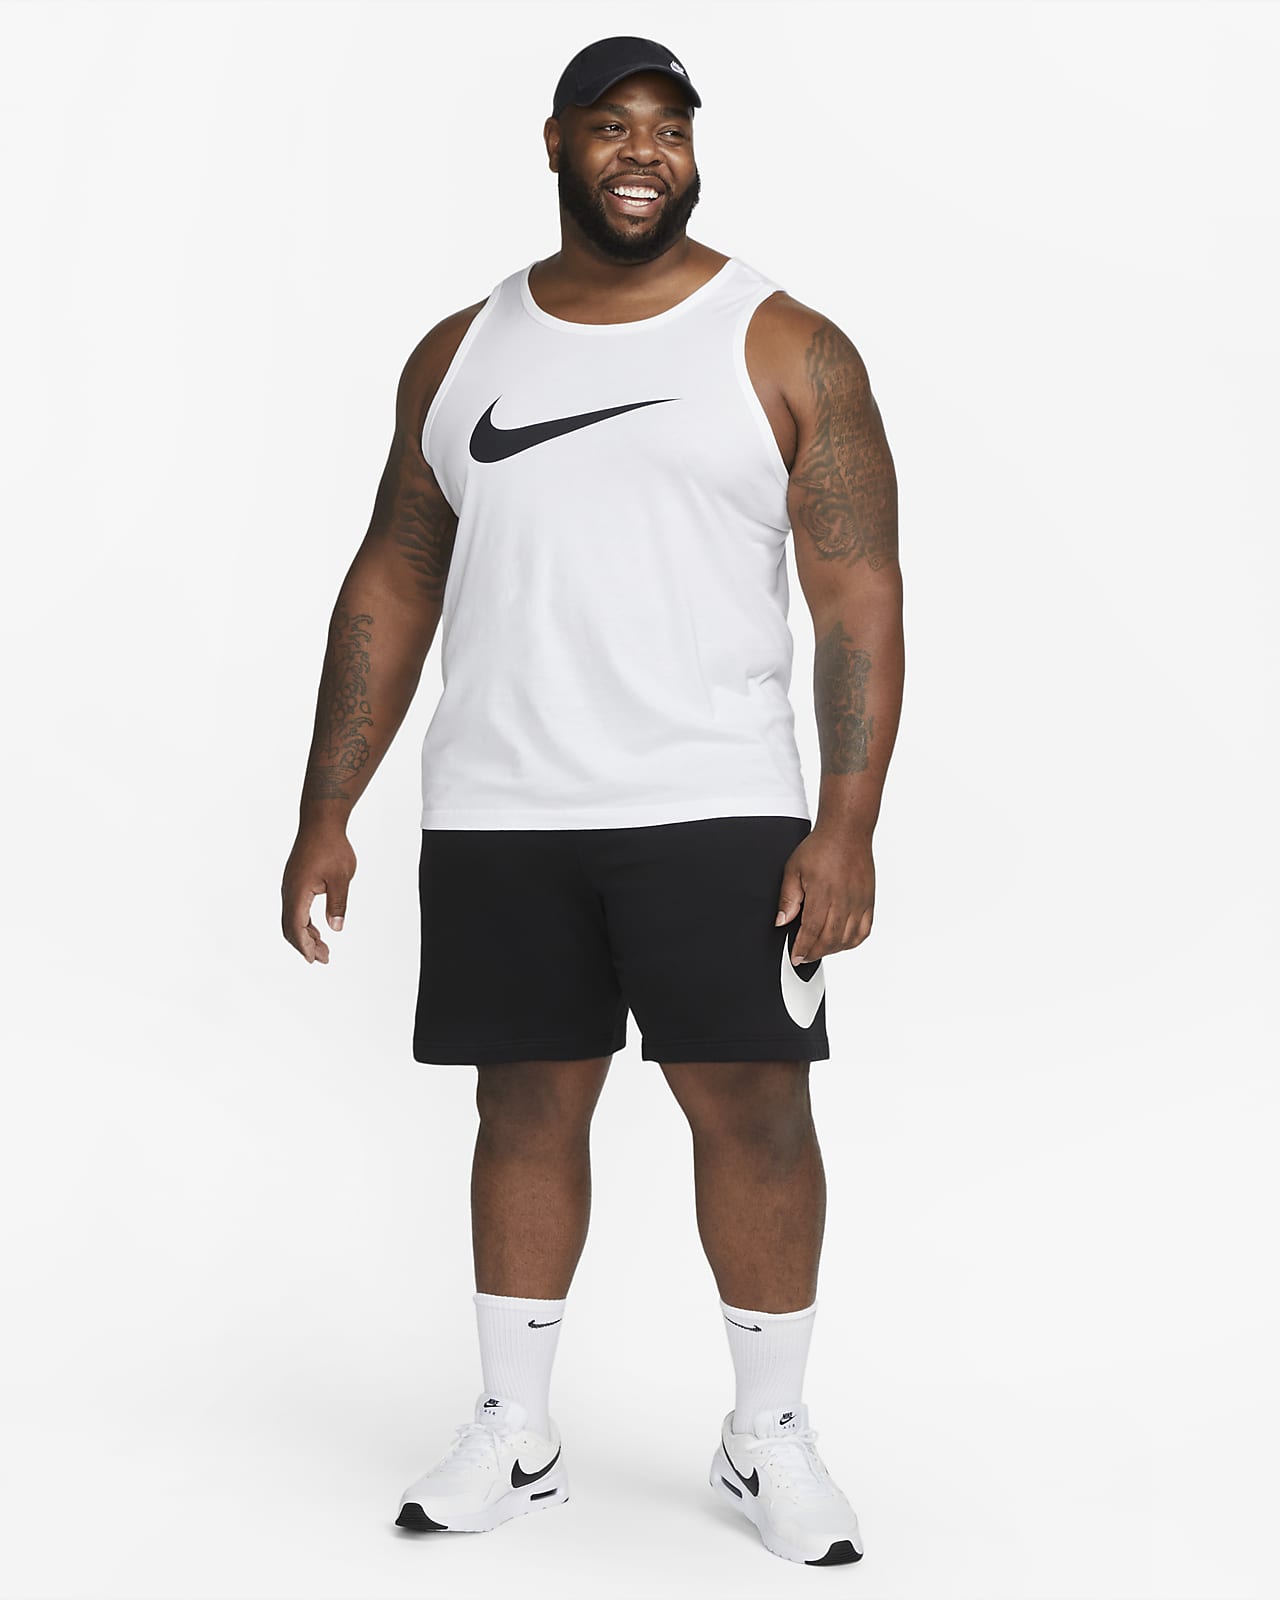 Débardeur Nike Sportswear Blanc pour Homme - FB9764-100